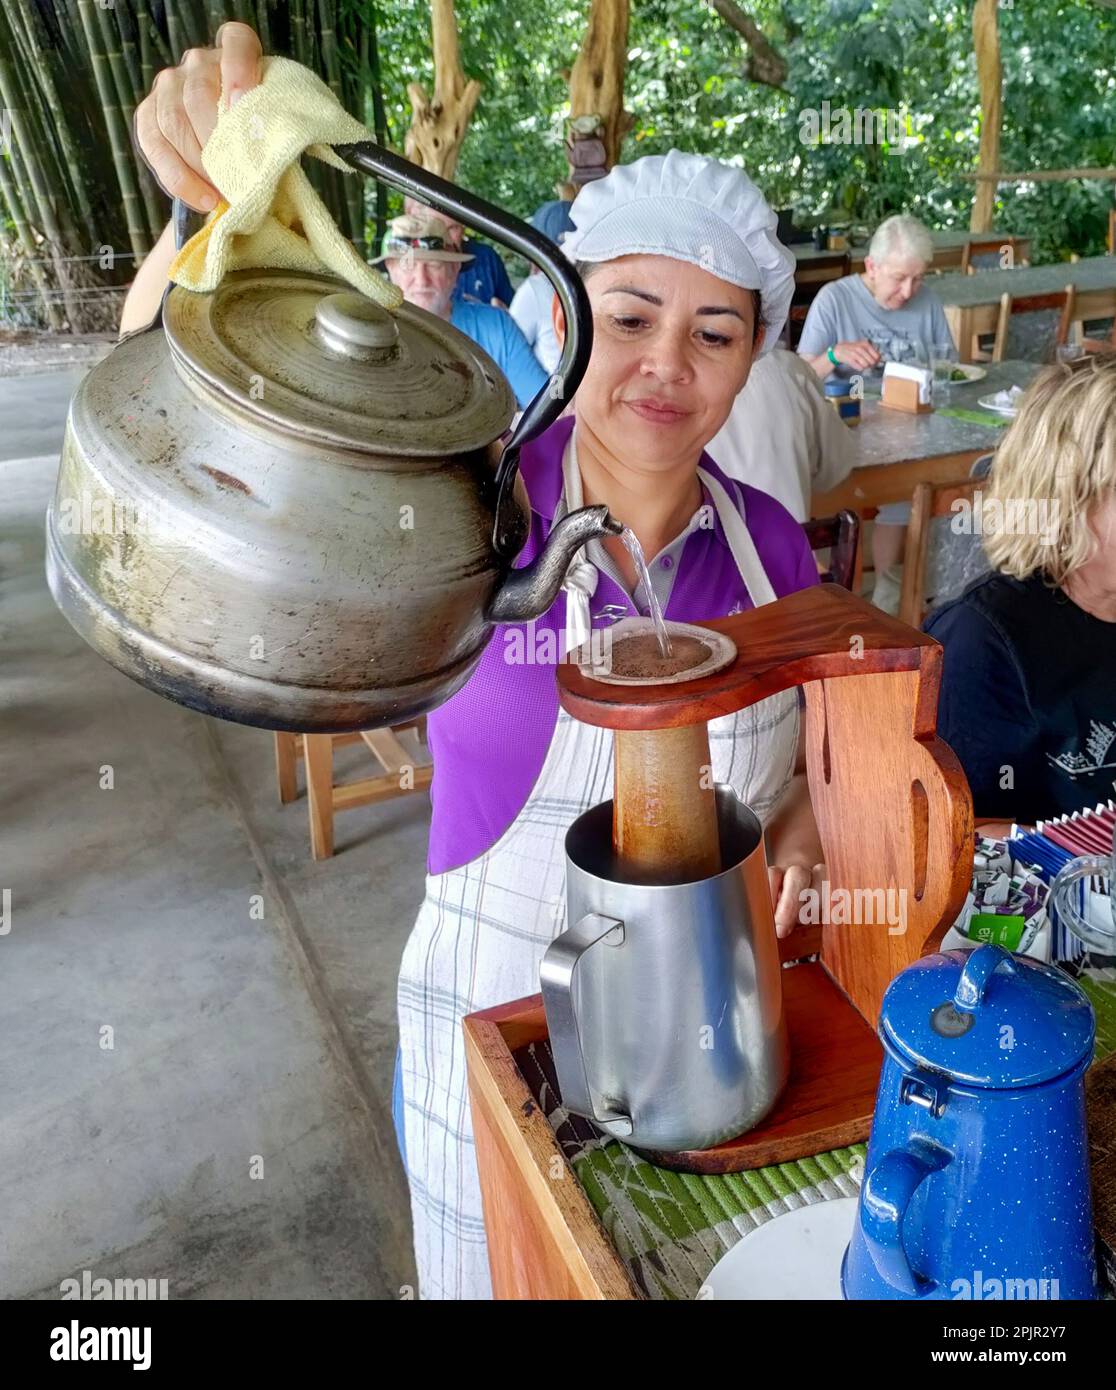 La Fortuna, Costa Rica - Ein Mitarbeiter bereitet Kaffee zum Mittagessen auf der Finca Educativa Don Juan (Don Juan Educational Farm) zu. Gäste helfen bei der Zubereitung der Mahlzeit, was Stockfoto